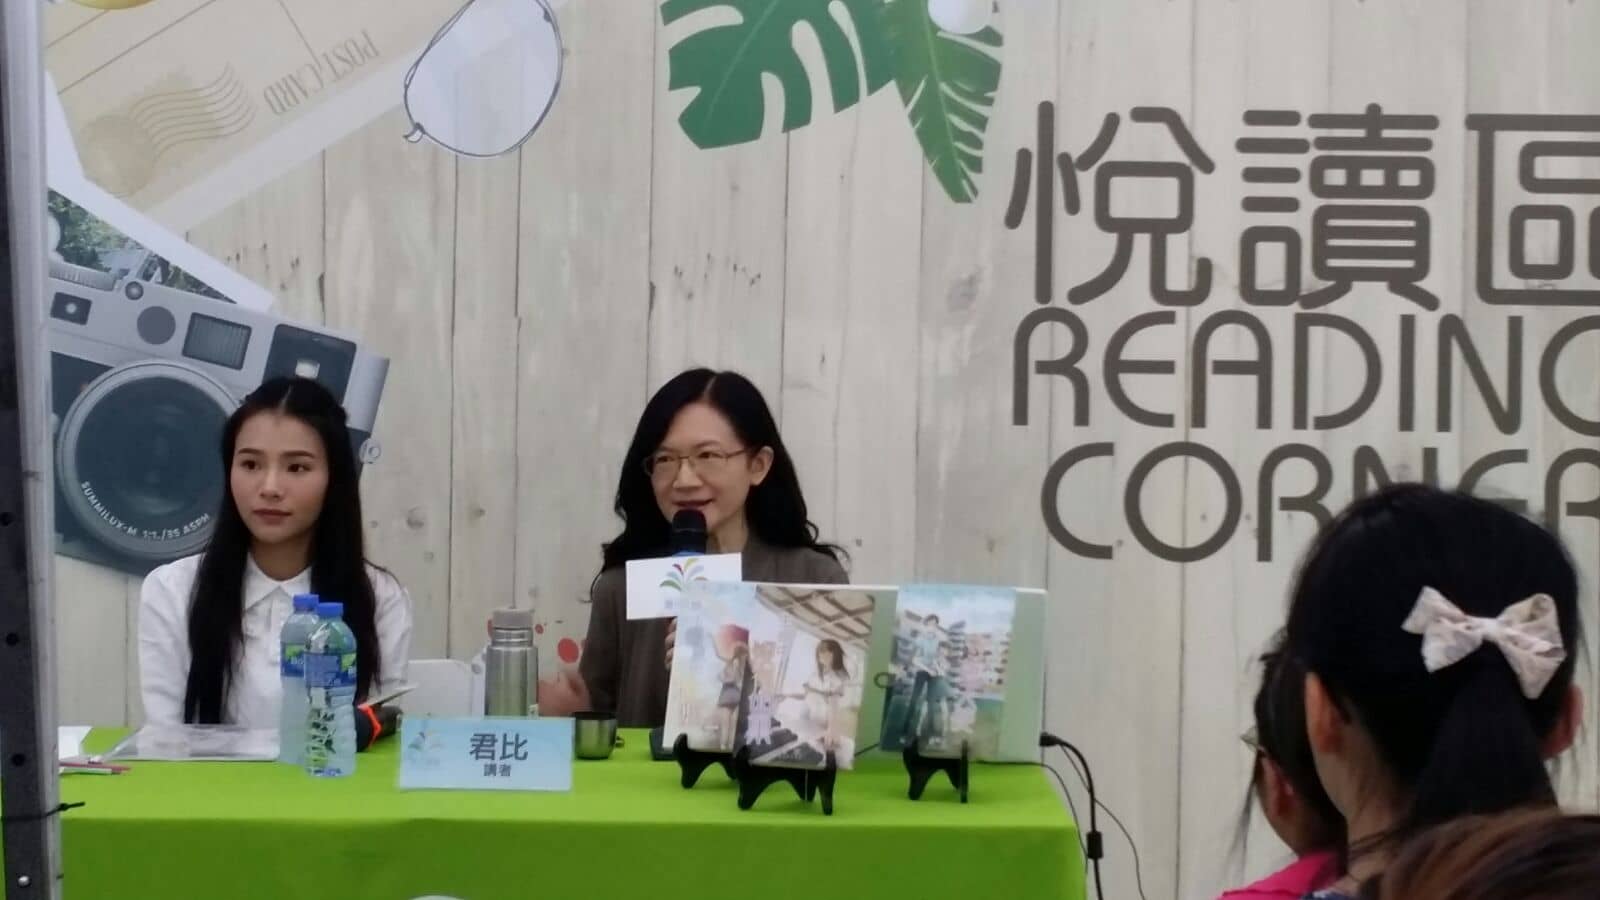 [2016-10-15] 香港社區書展 閱讀在修頓